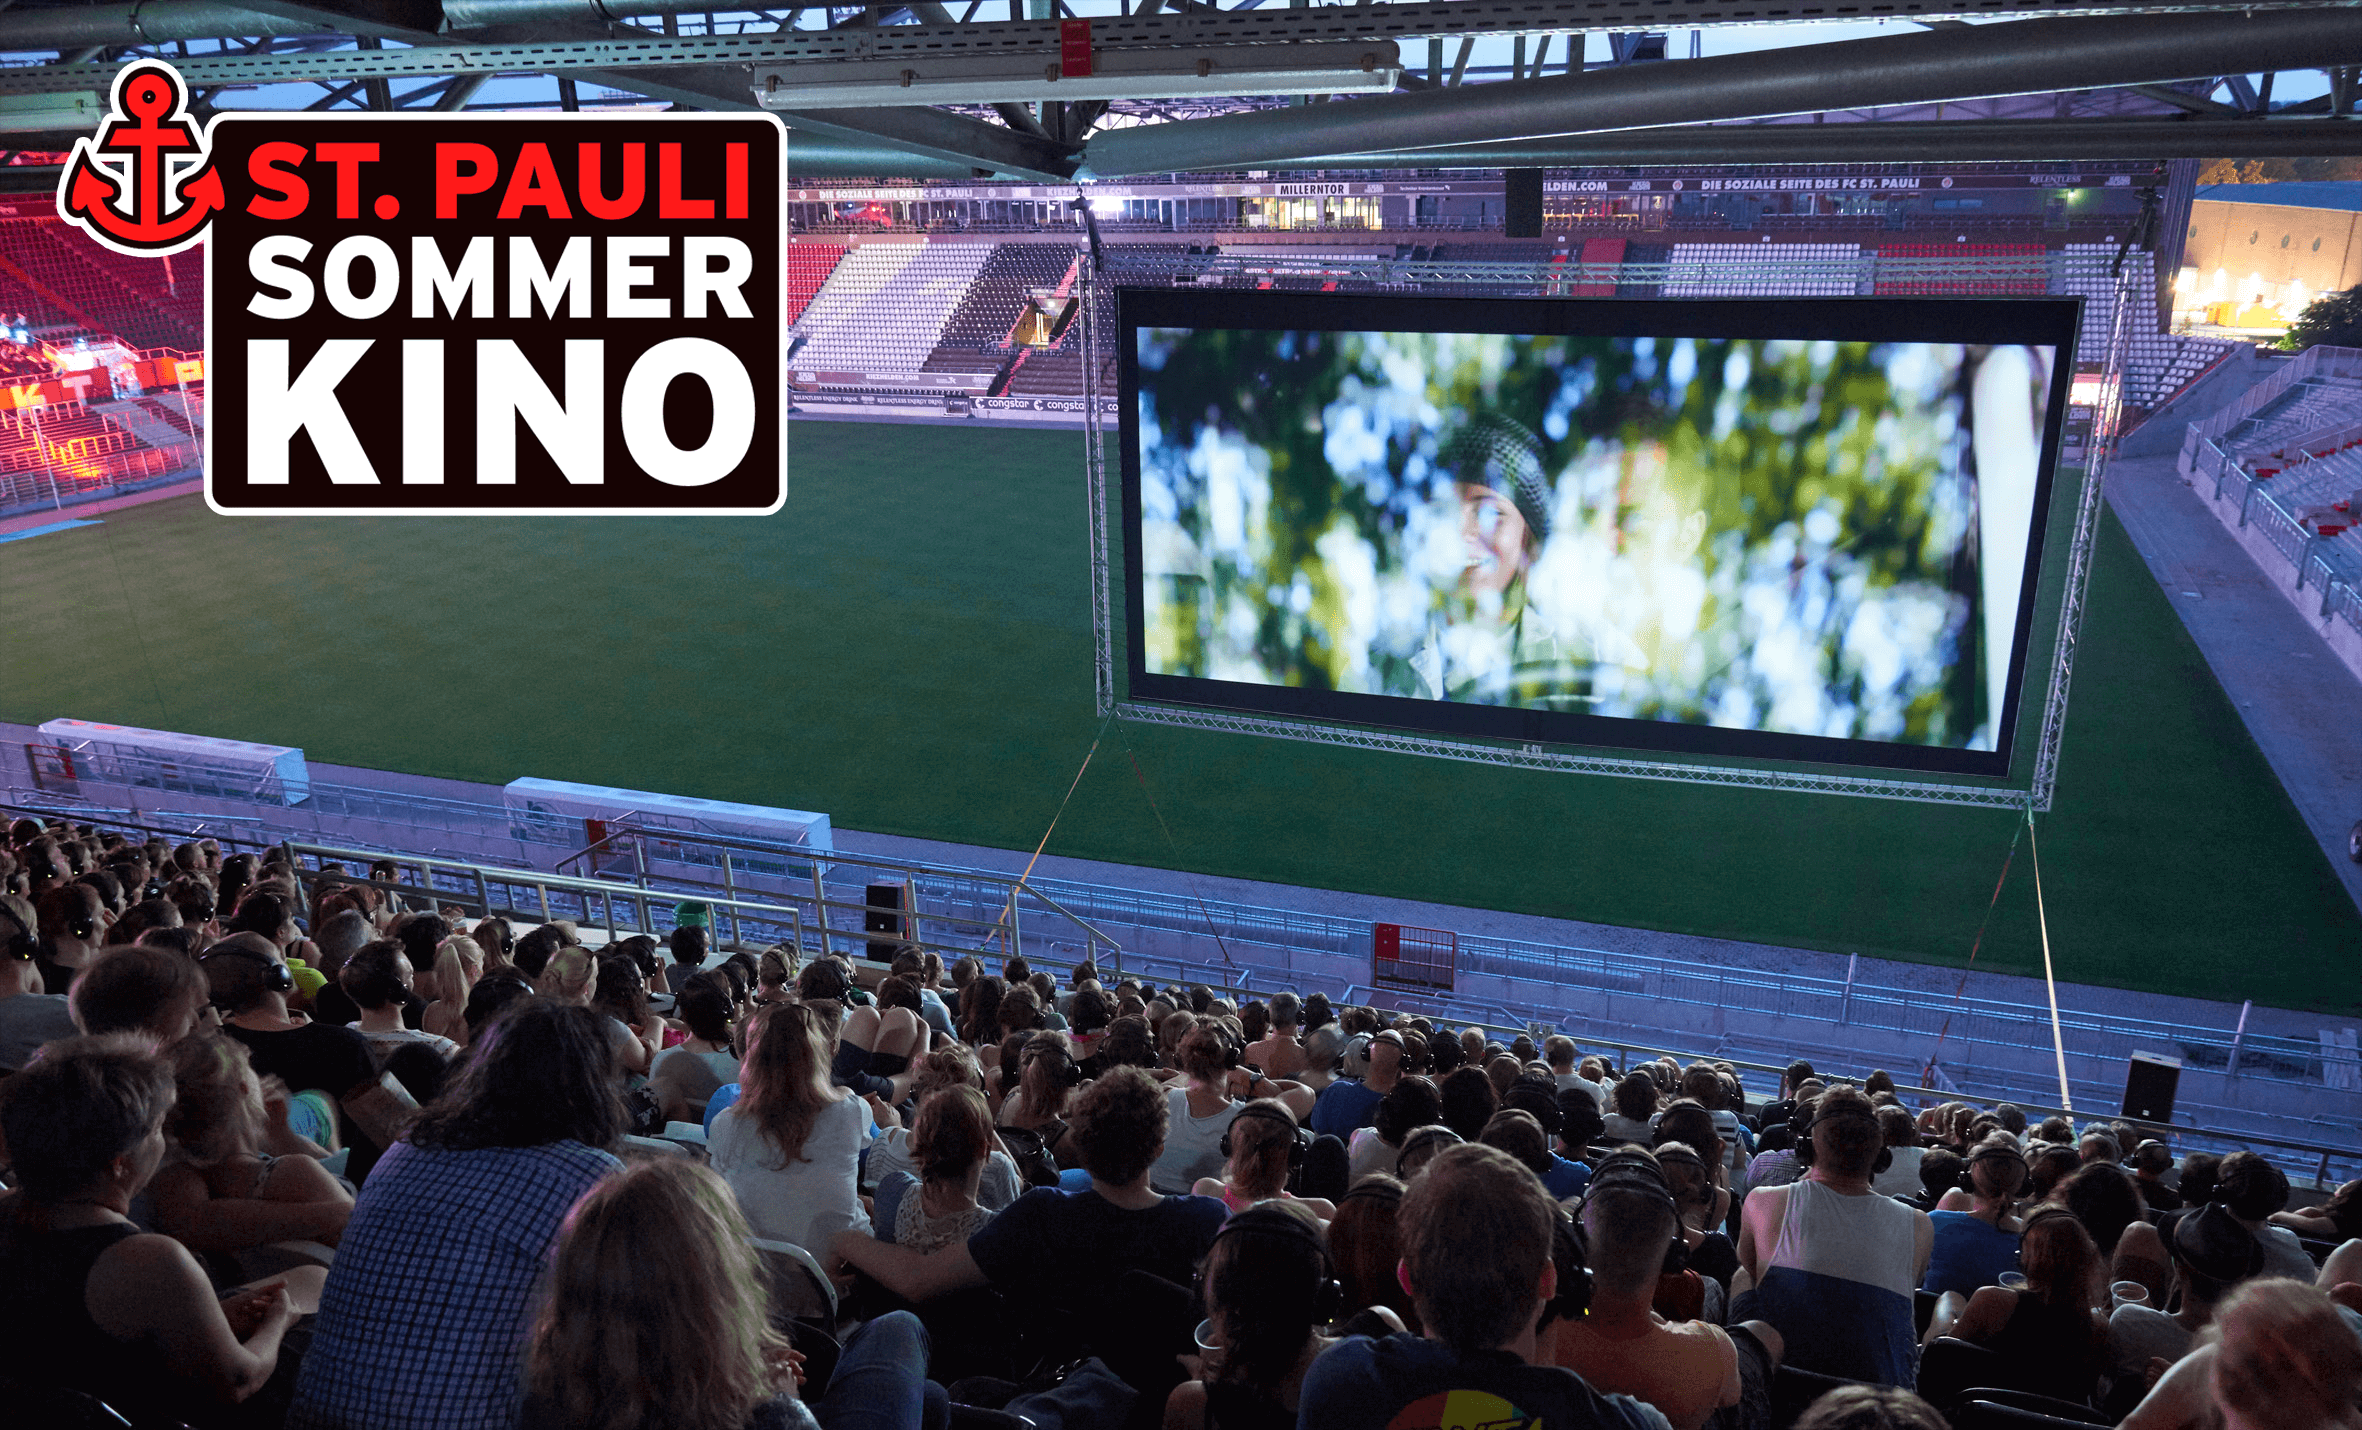 Juhu! Das St. Pauli Sommerkino ist wieder da! Schau‘ dir erstklassige Filme unter freiem Himmel in toller Stadionatmosphäre an! 😍